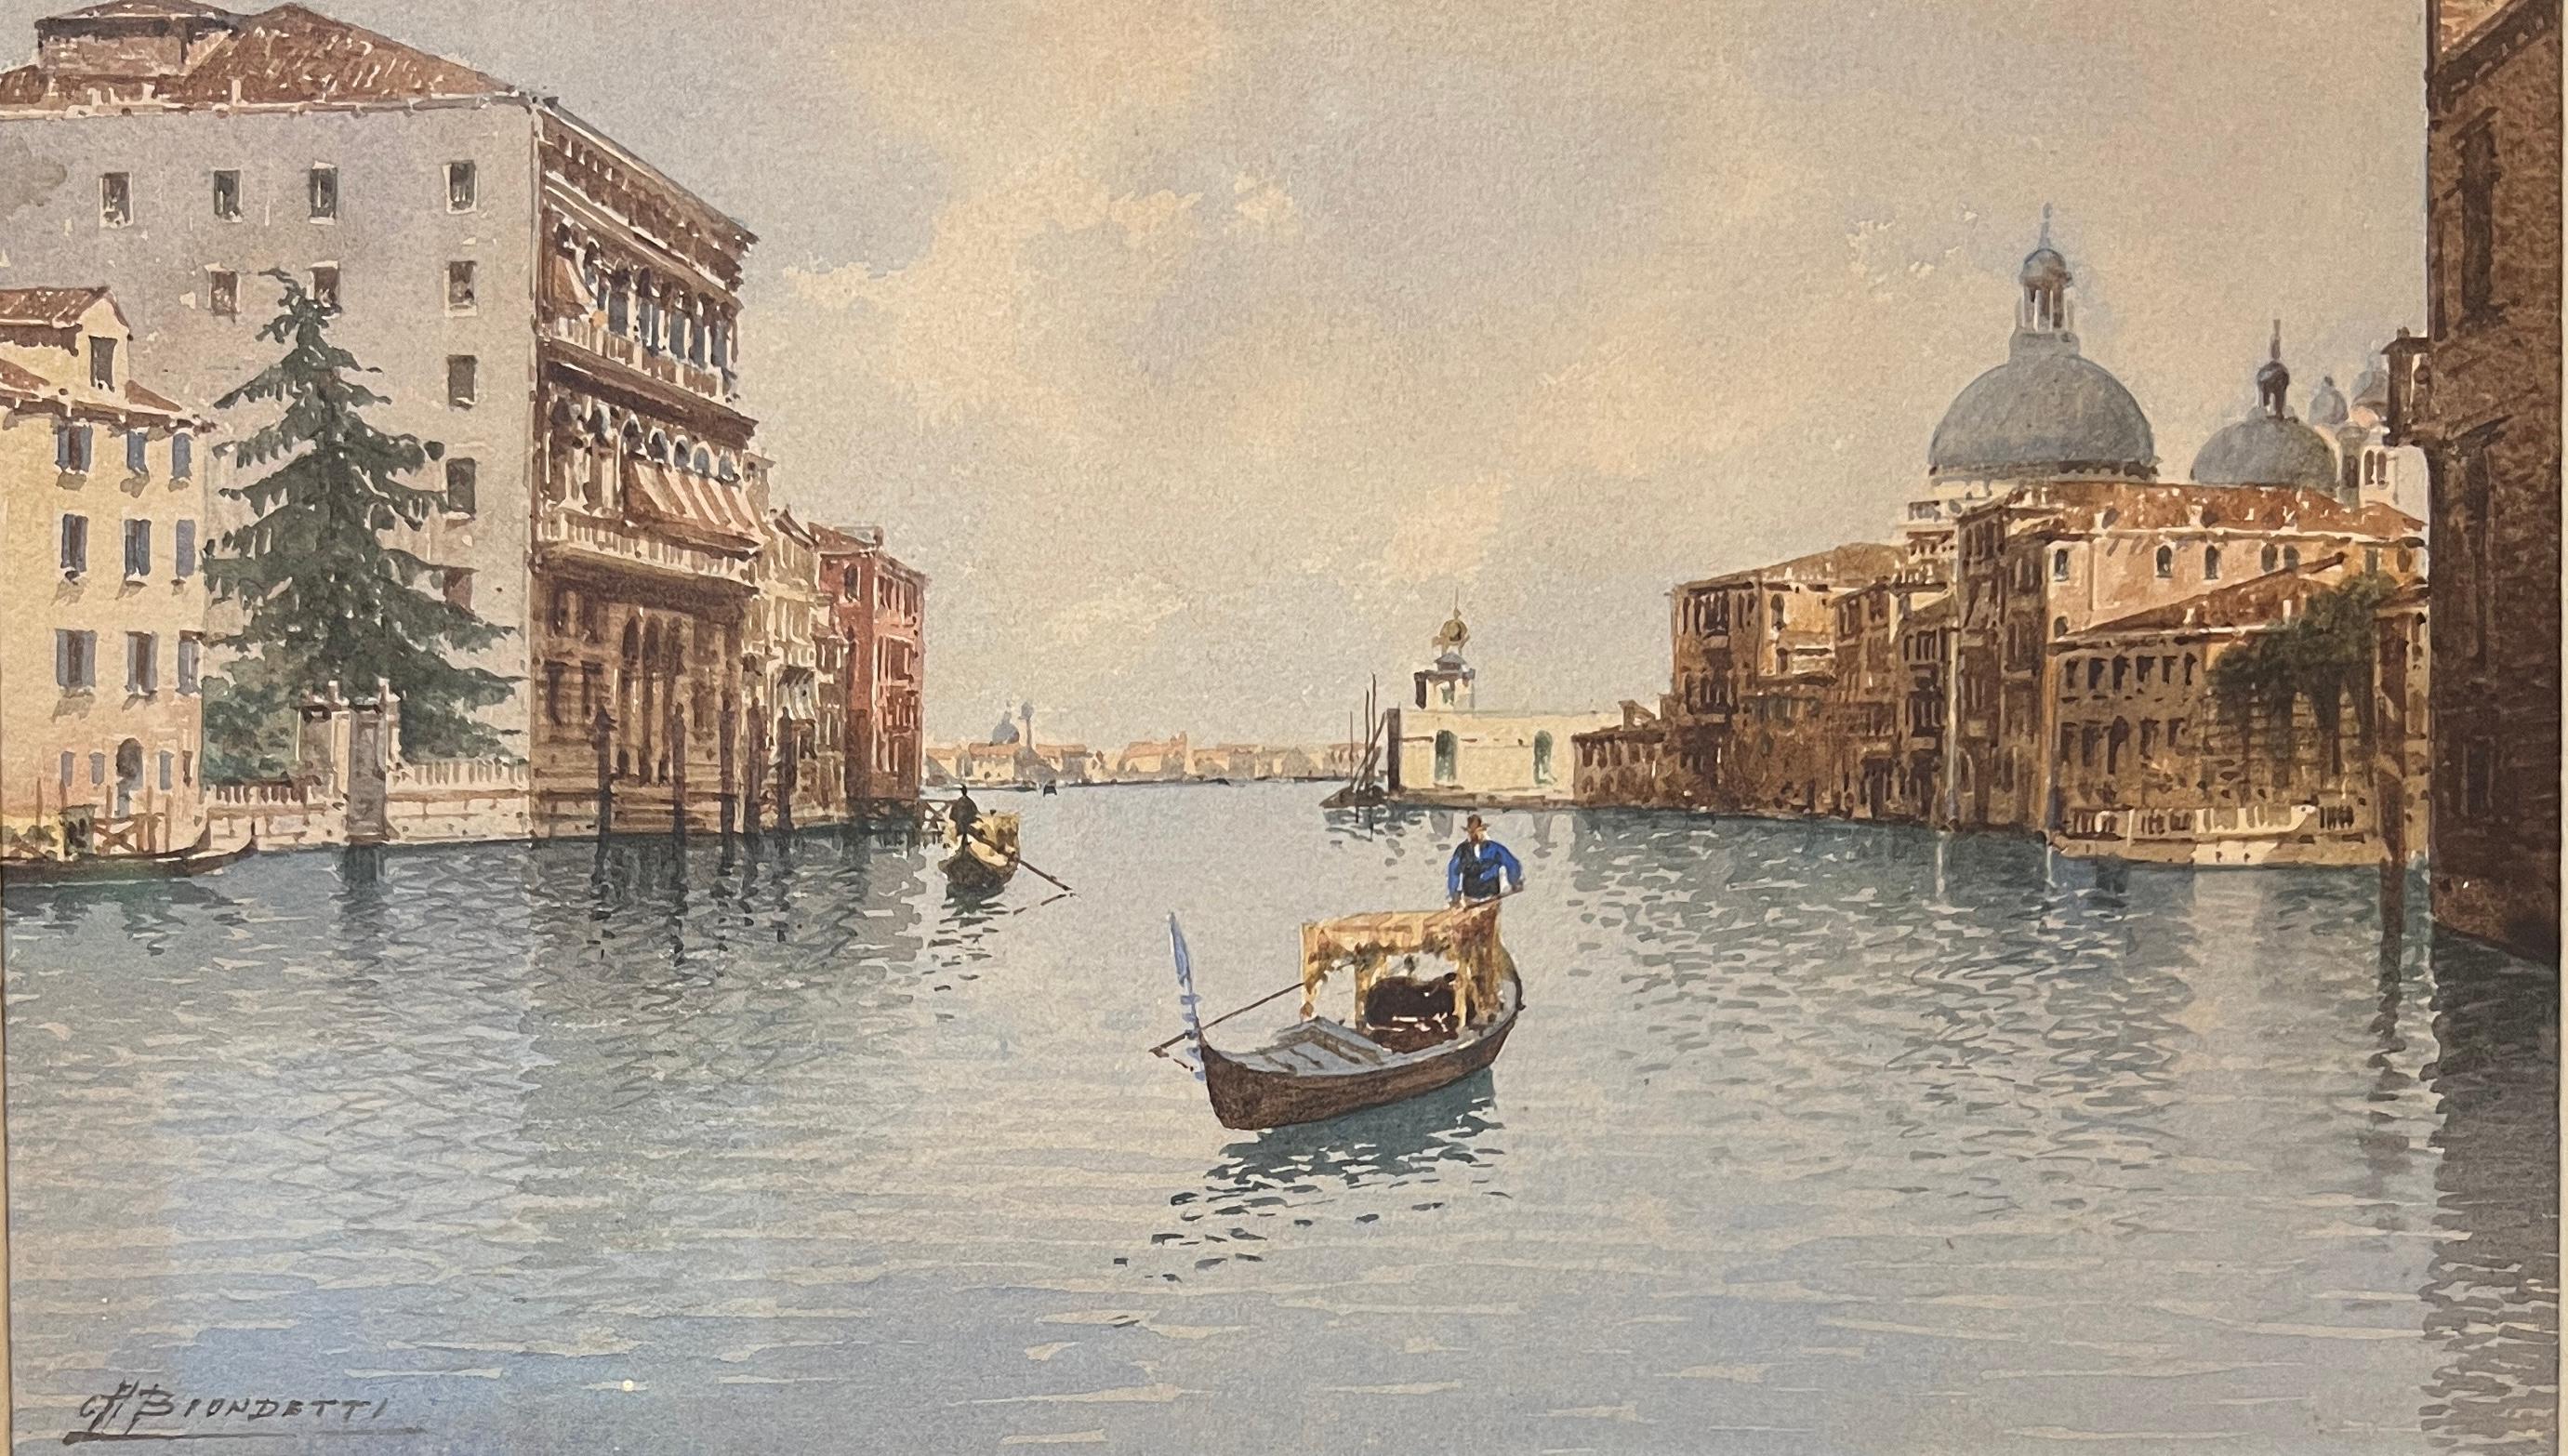 Andrea Biondetti Landscape Art - Gondolas on the Grand Canal in Venice